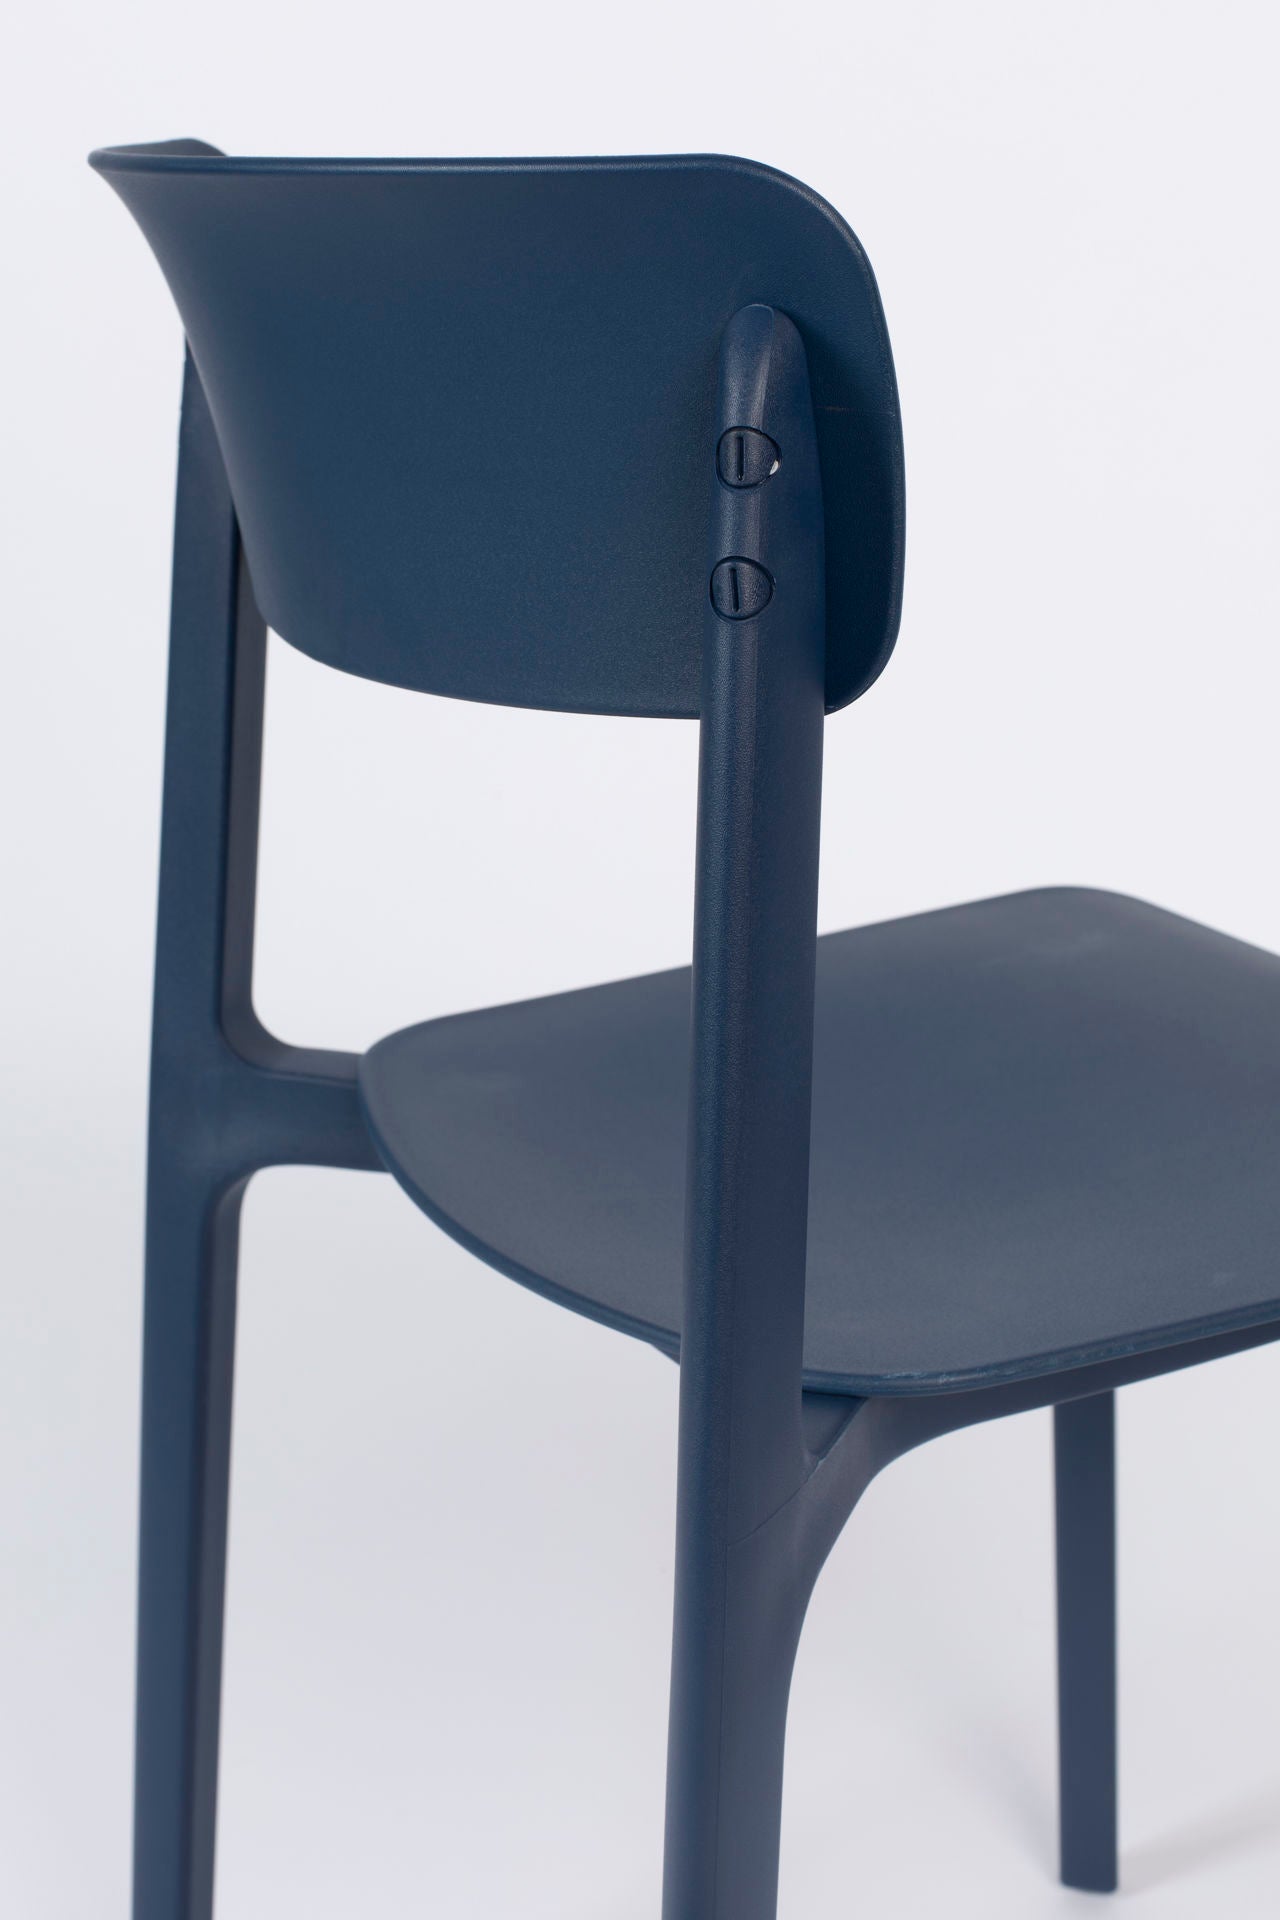 Nancy's Elsmere Chair - Rétro - Bleu - Polypropylène, Plastique - 47 cm x 48 cm x 94 cm